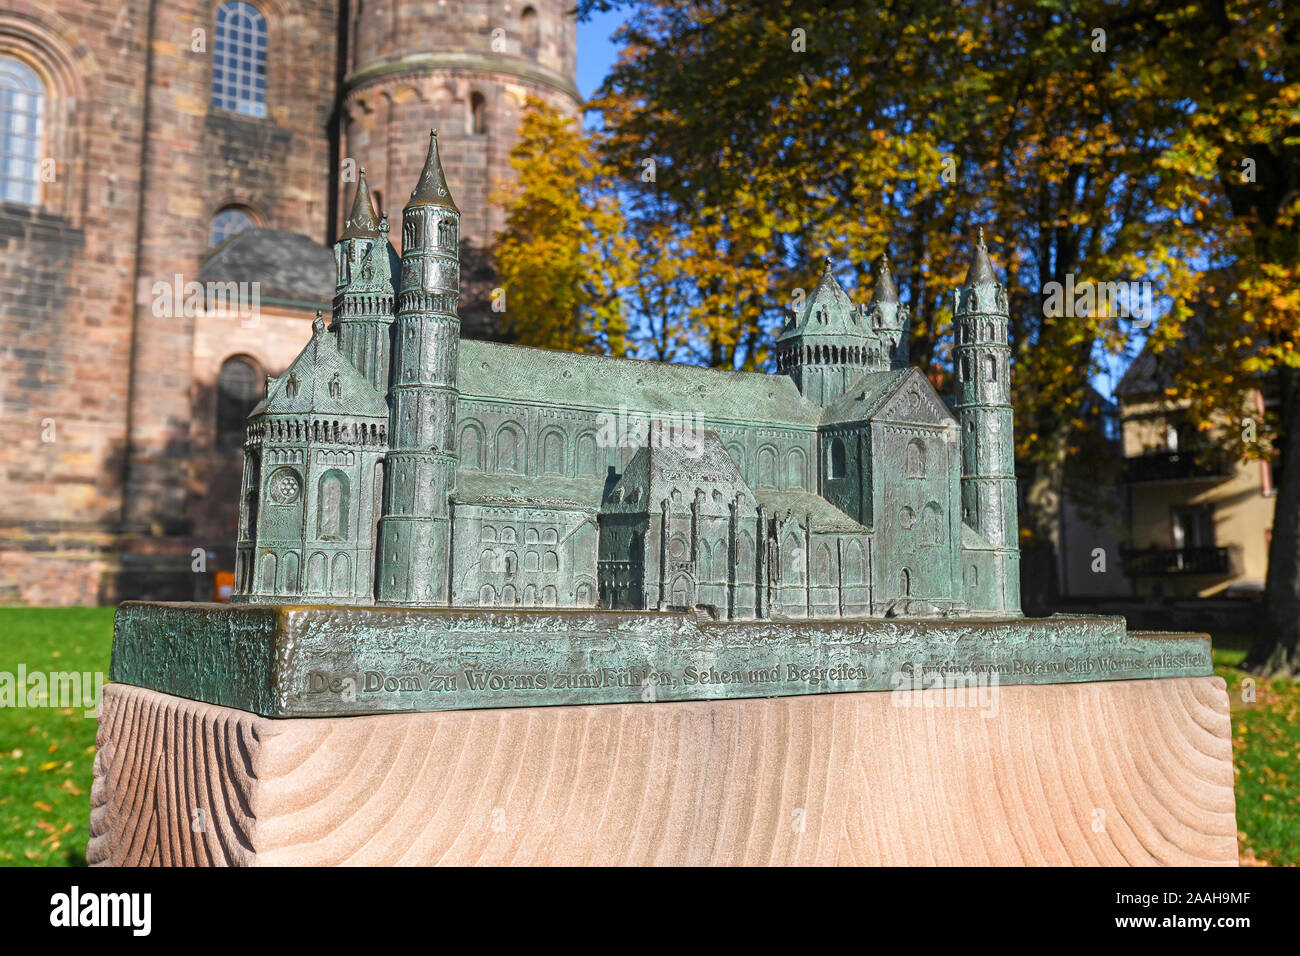 Small touch Prüfung Modell replica für blinde Menschen der Römisch-katholischen St. Peter's Cathedral in der Stadt Worms in Deutschland Stockfoto